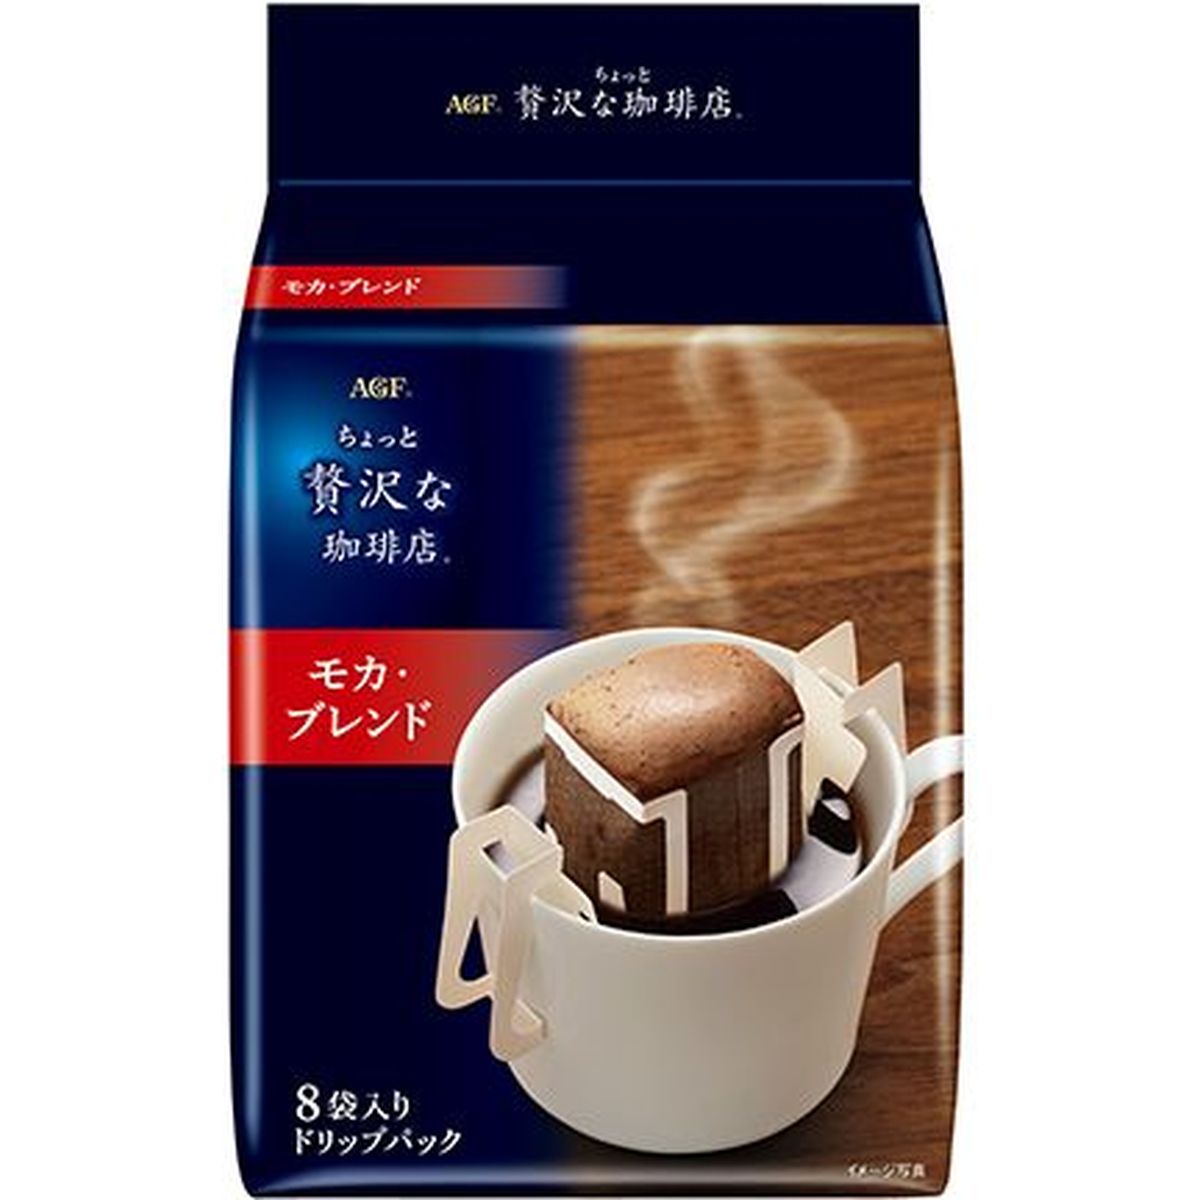 【6個入リ】AGF 贅沢 ドリップコーヒー モカ 8袋